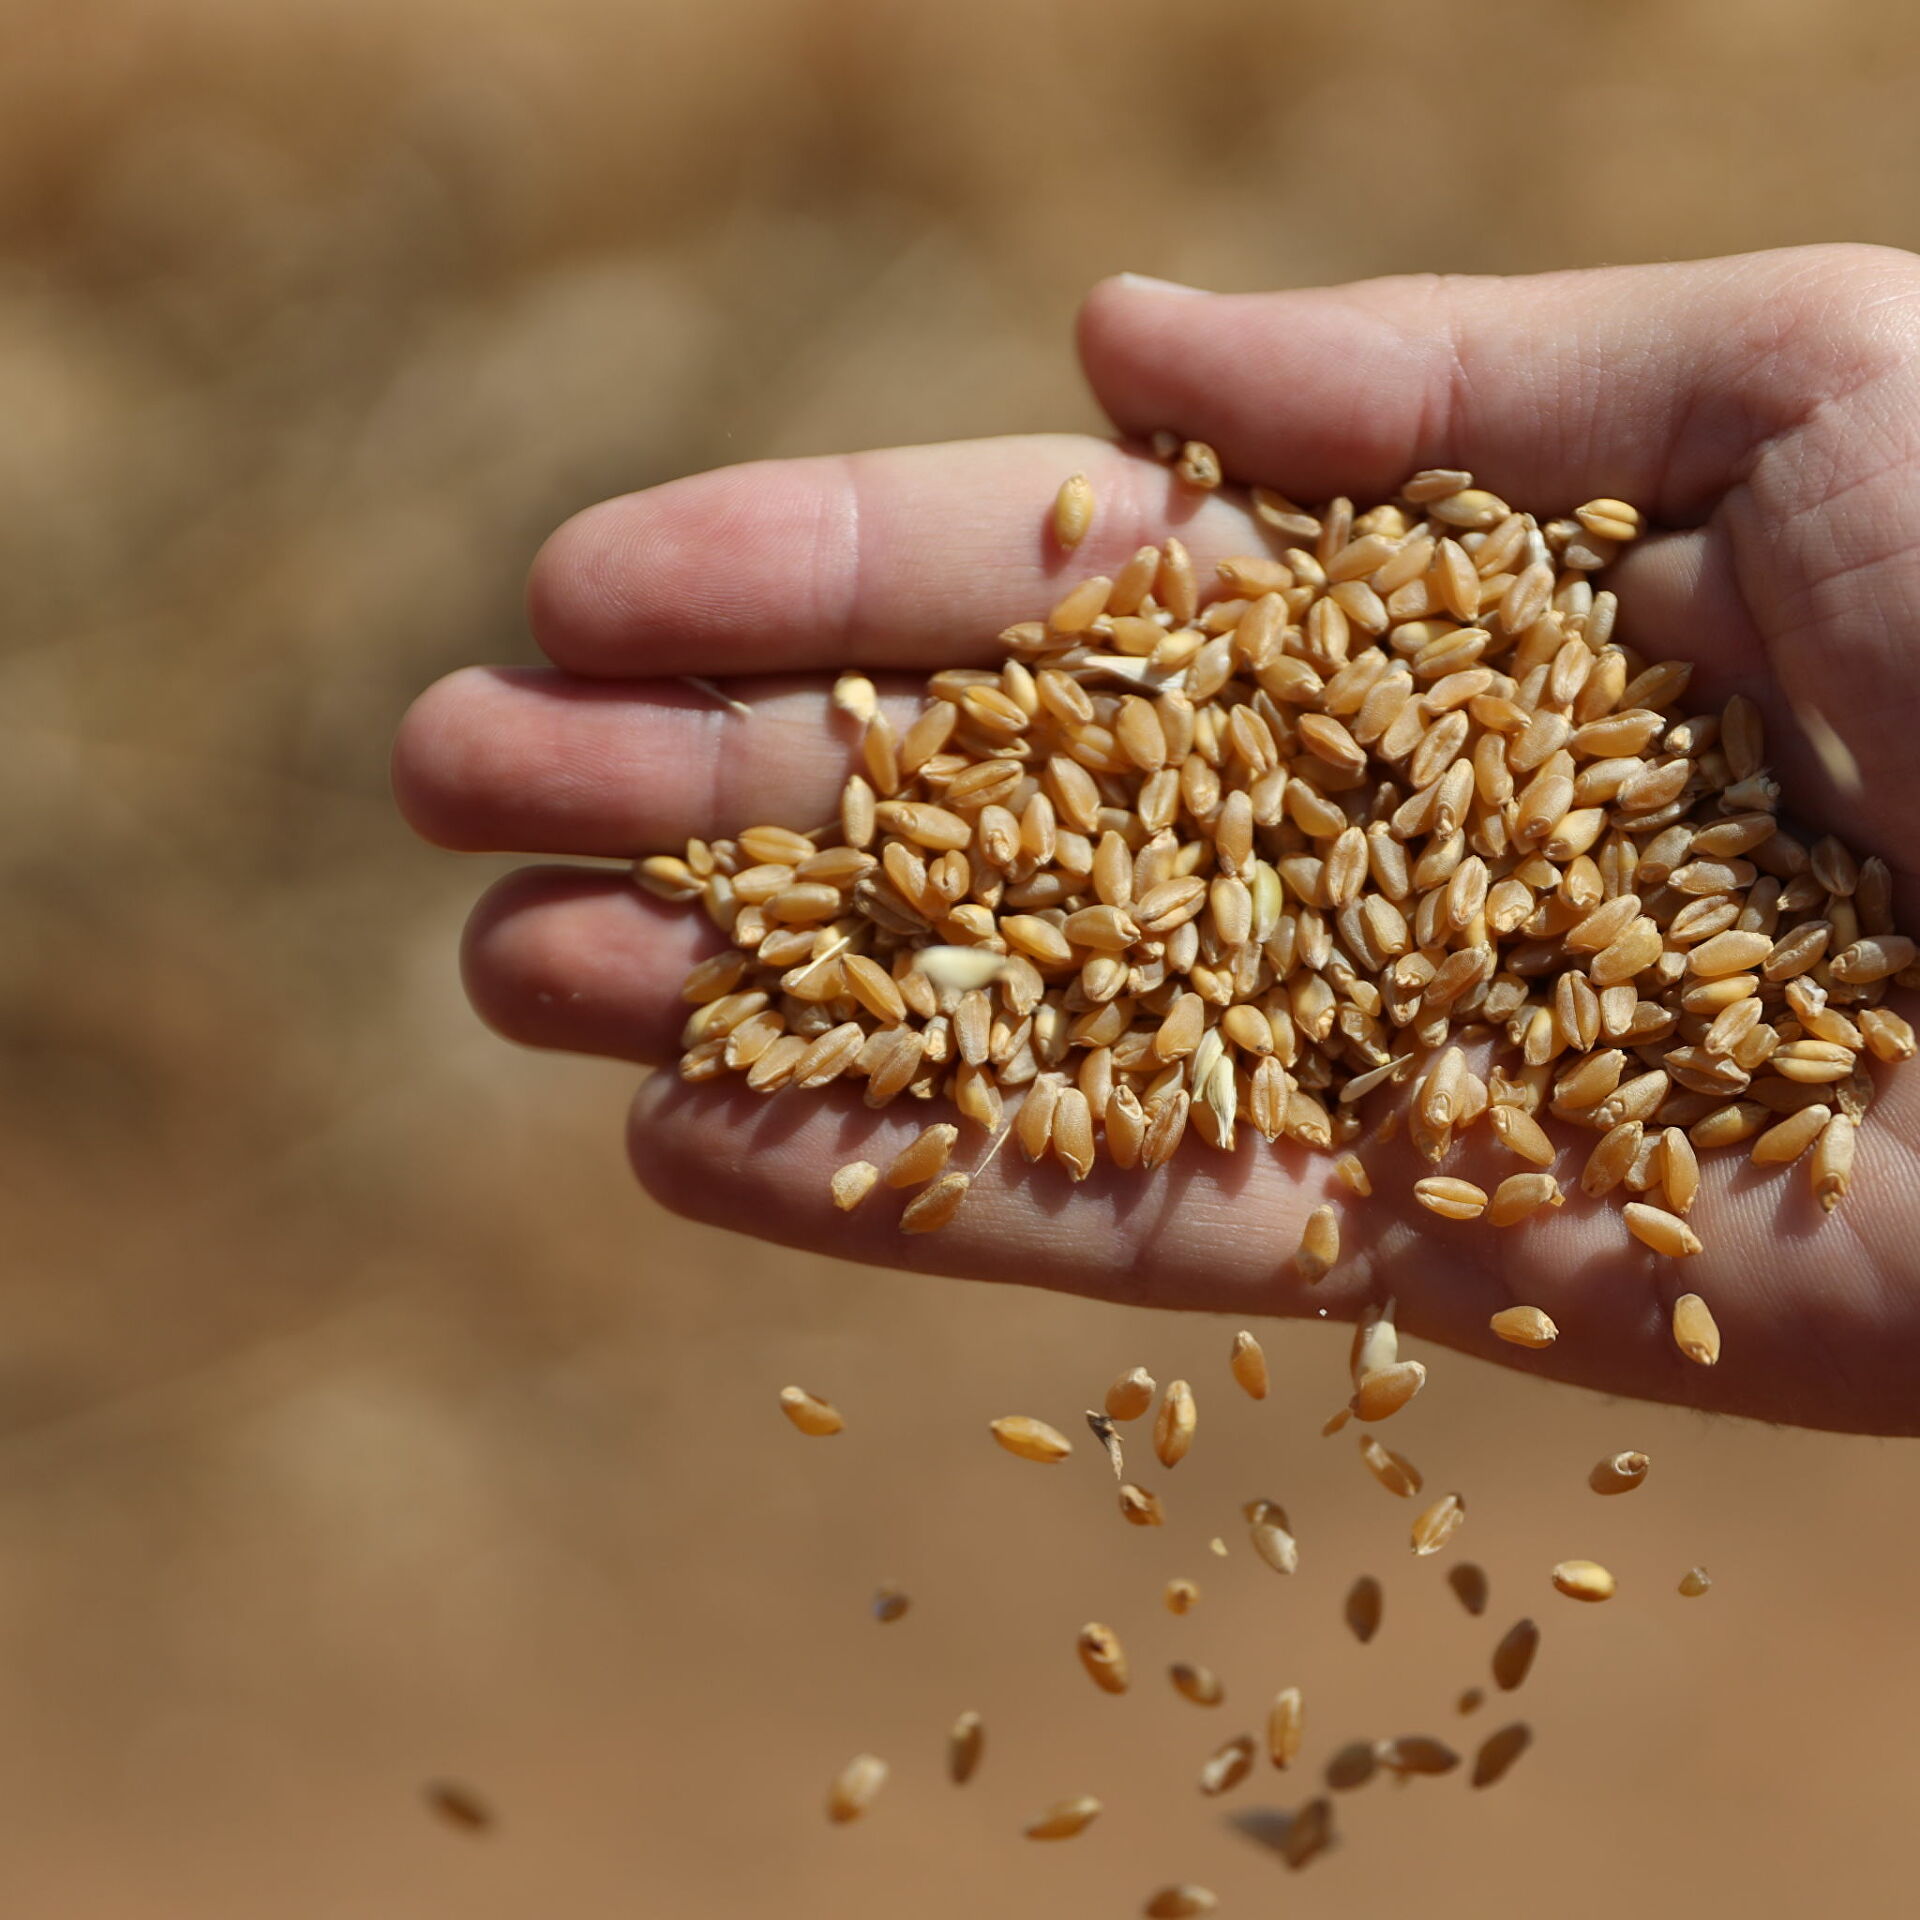 تجار الحبوب يطمئنون المغاربة ويؤكدون على توفر القمح رغم ظرفية الحرب